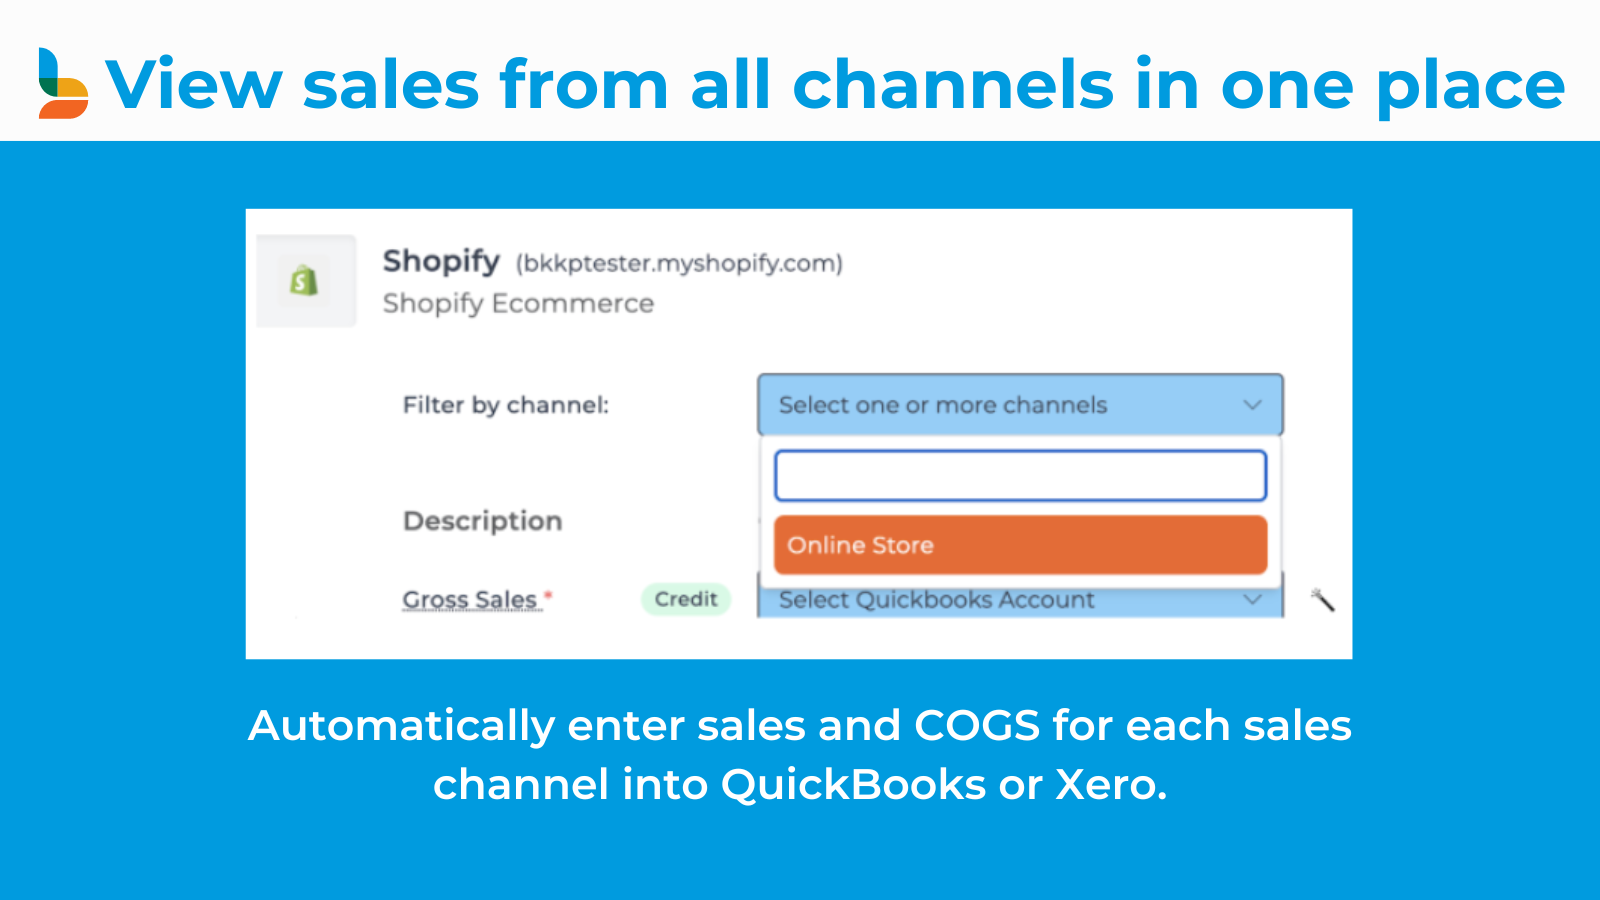 将所有多渠道销售按渠道划分到QuickBooks或Xero